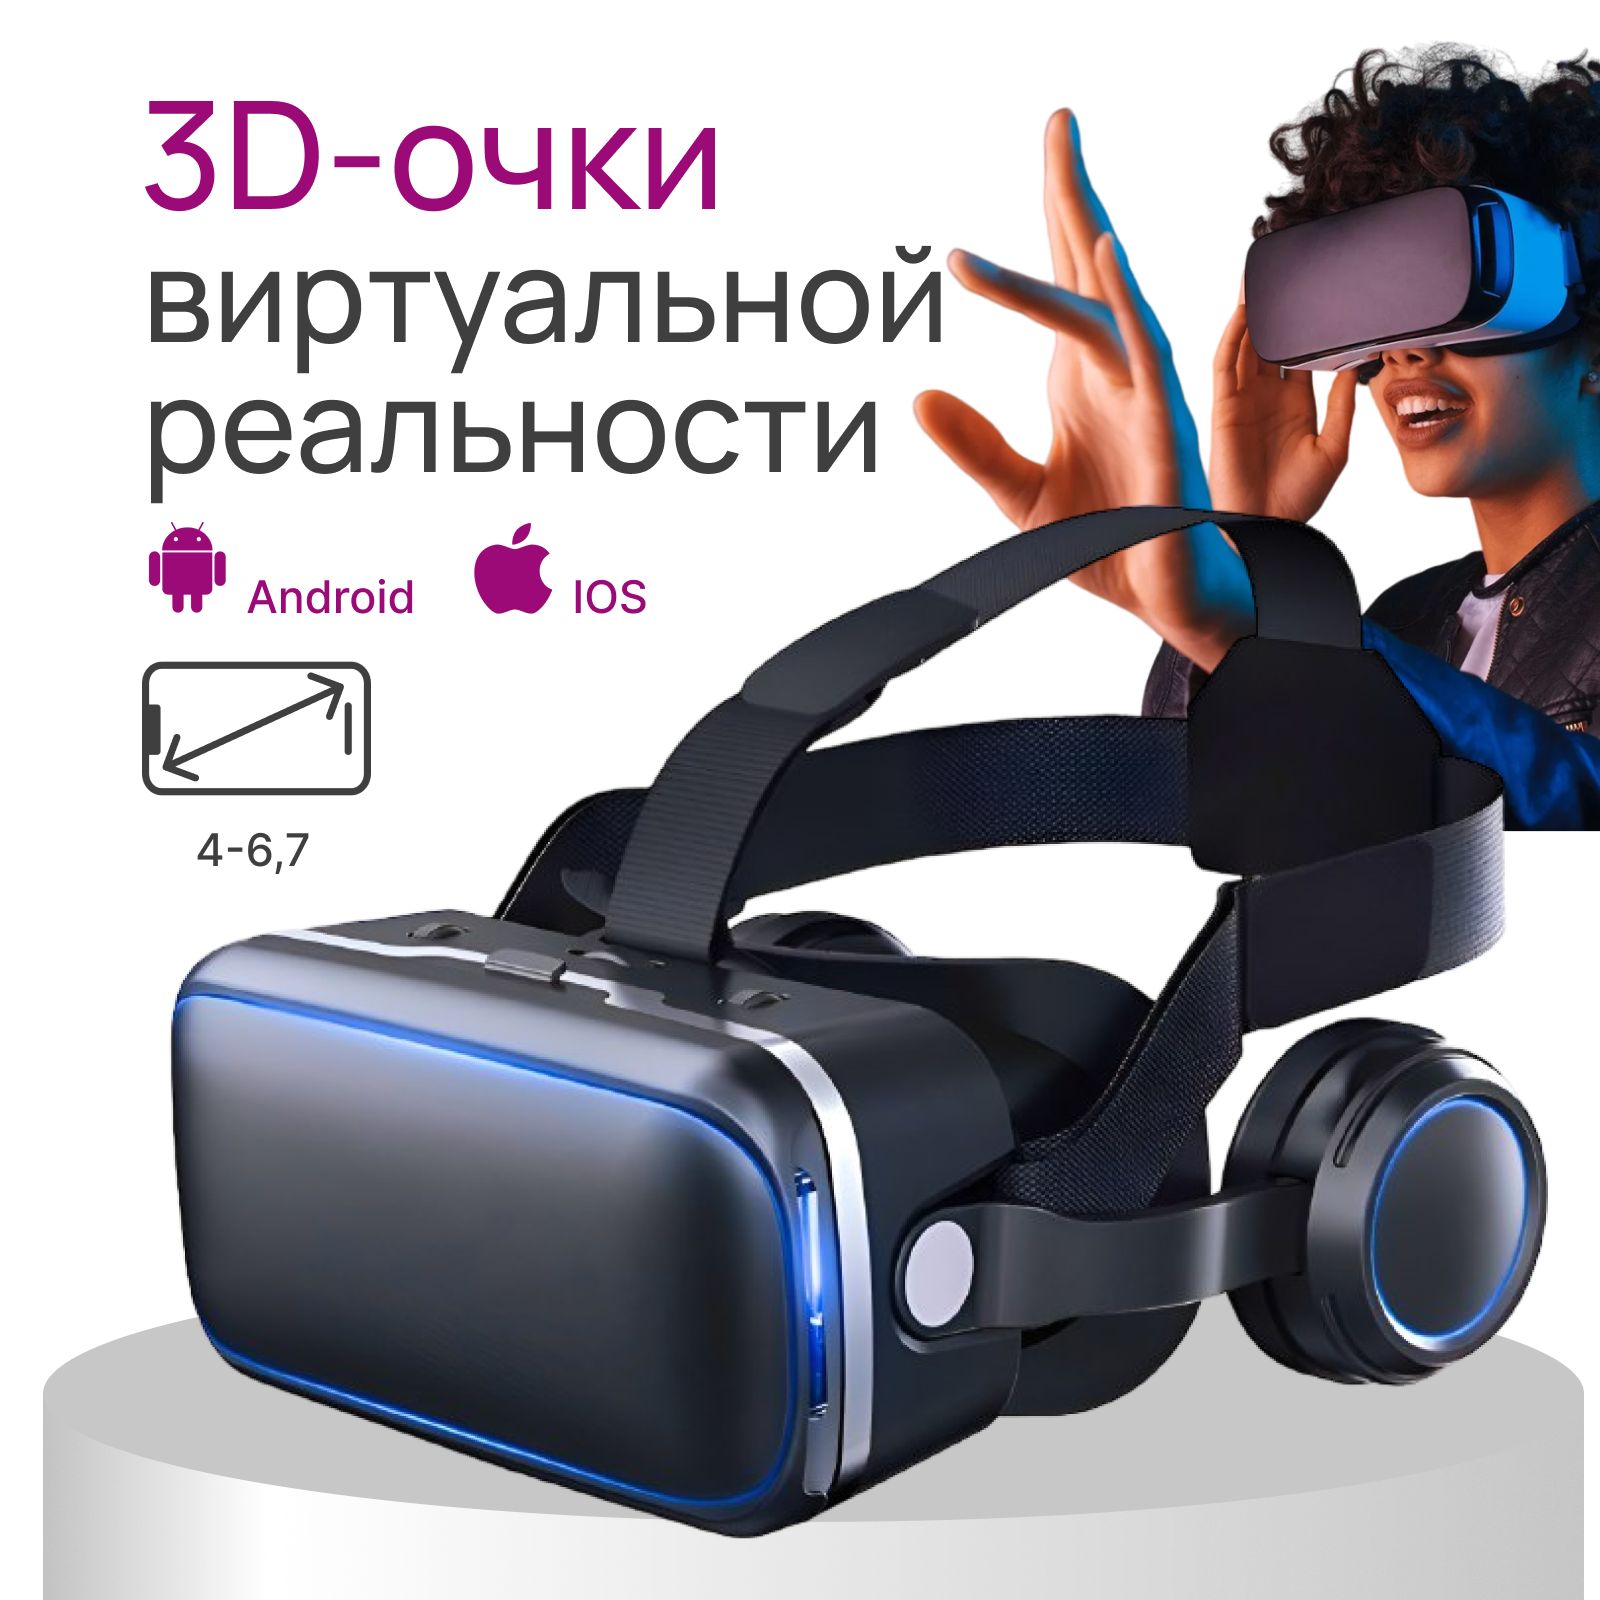 Очкивиртуальнойреальностисовстроенныминаушникамидлясмартфона,VR3Dочки(шлем)длятелефона